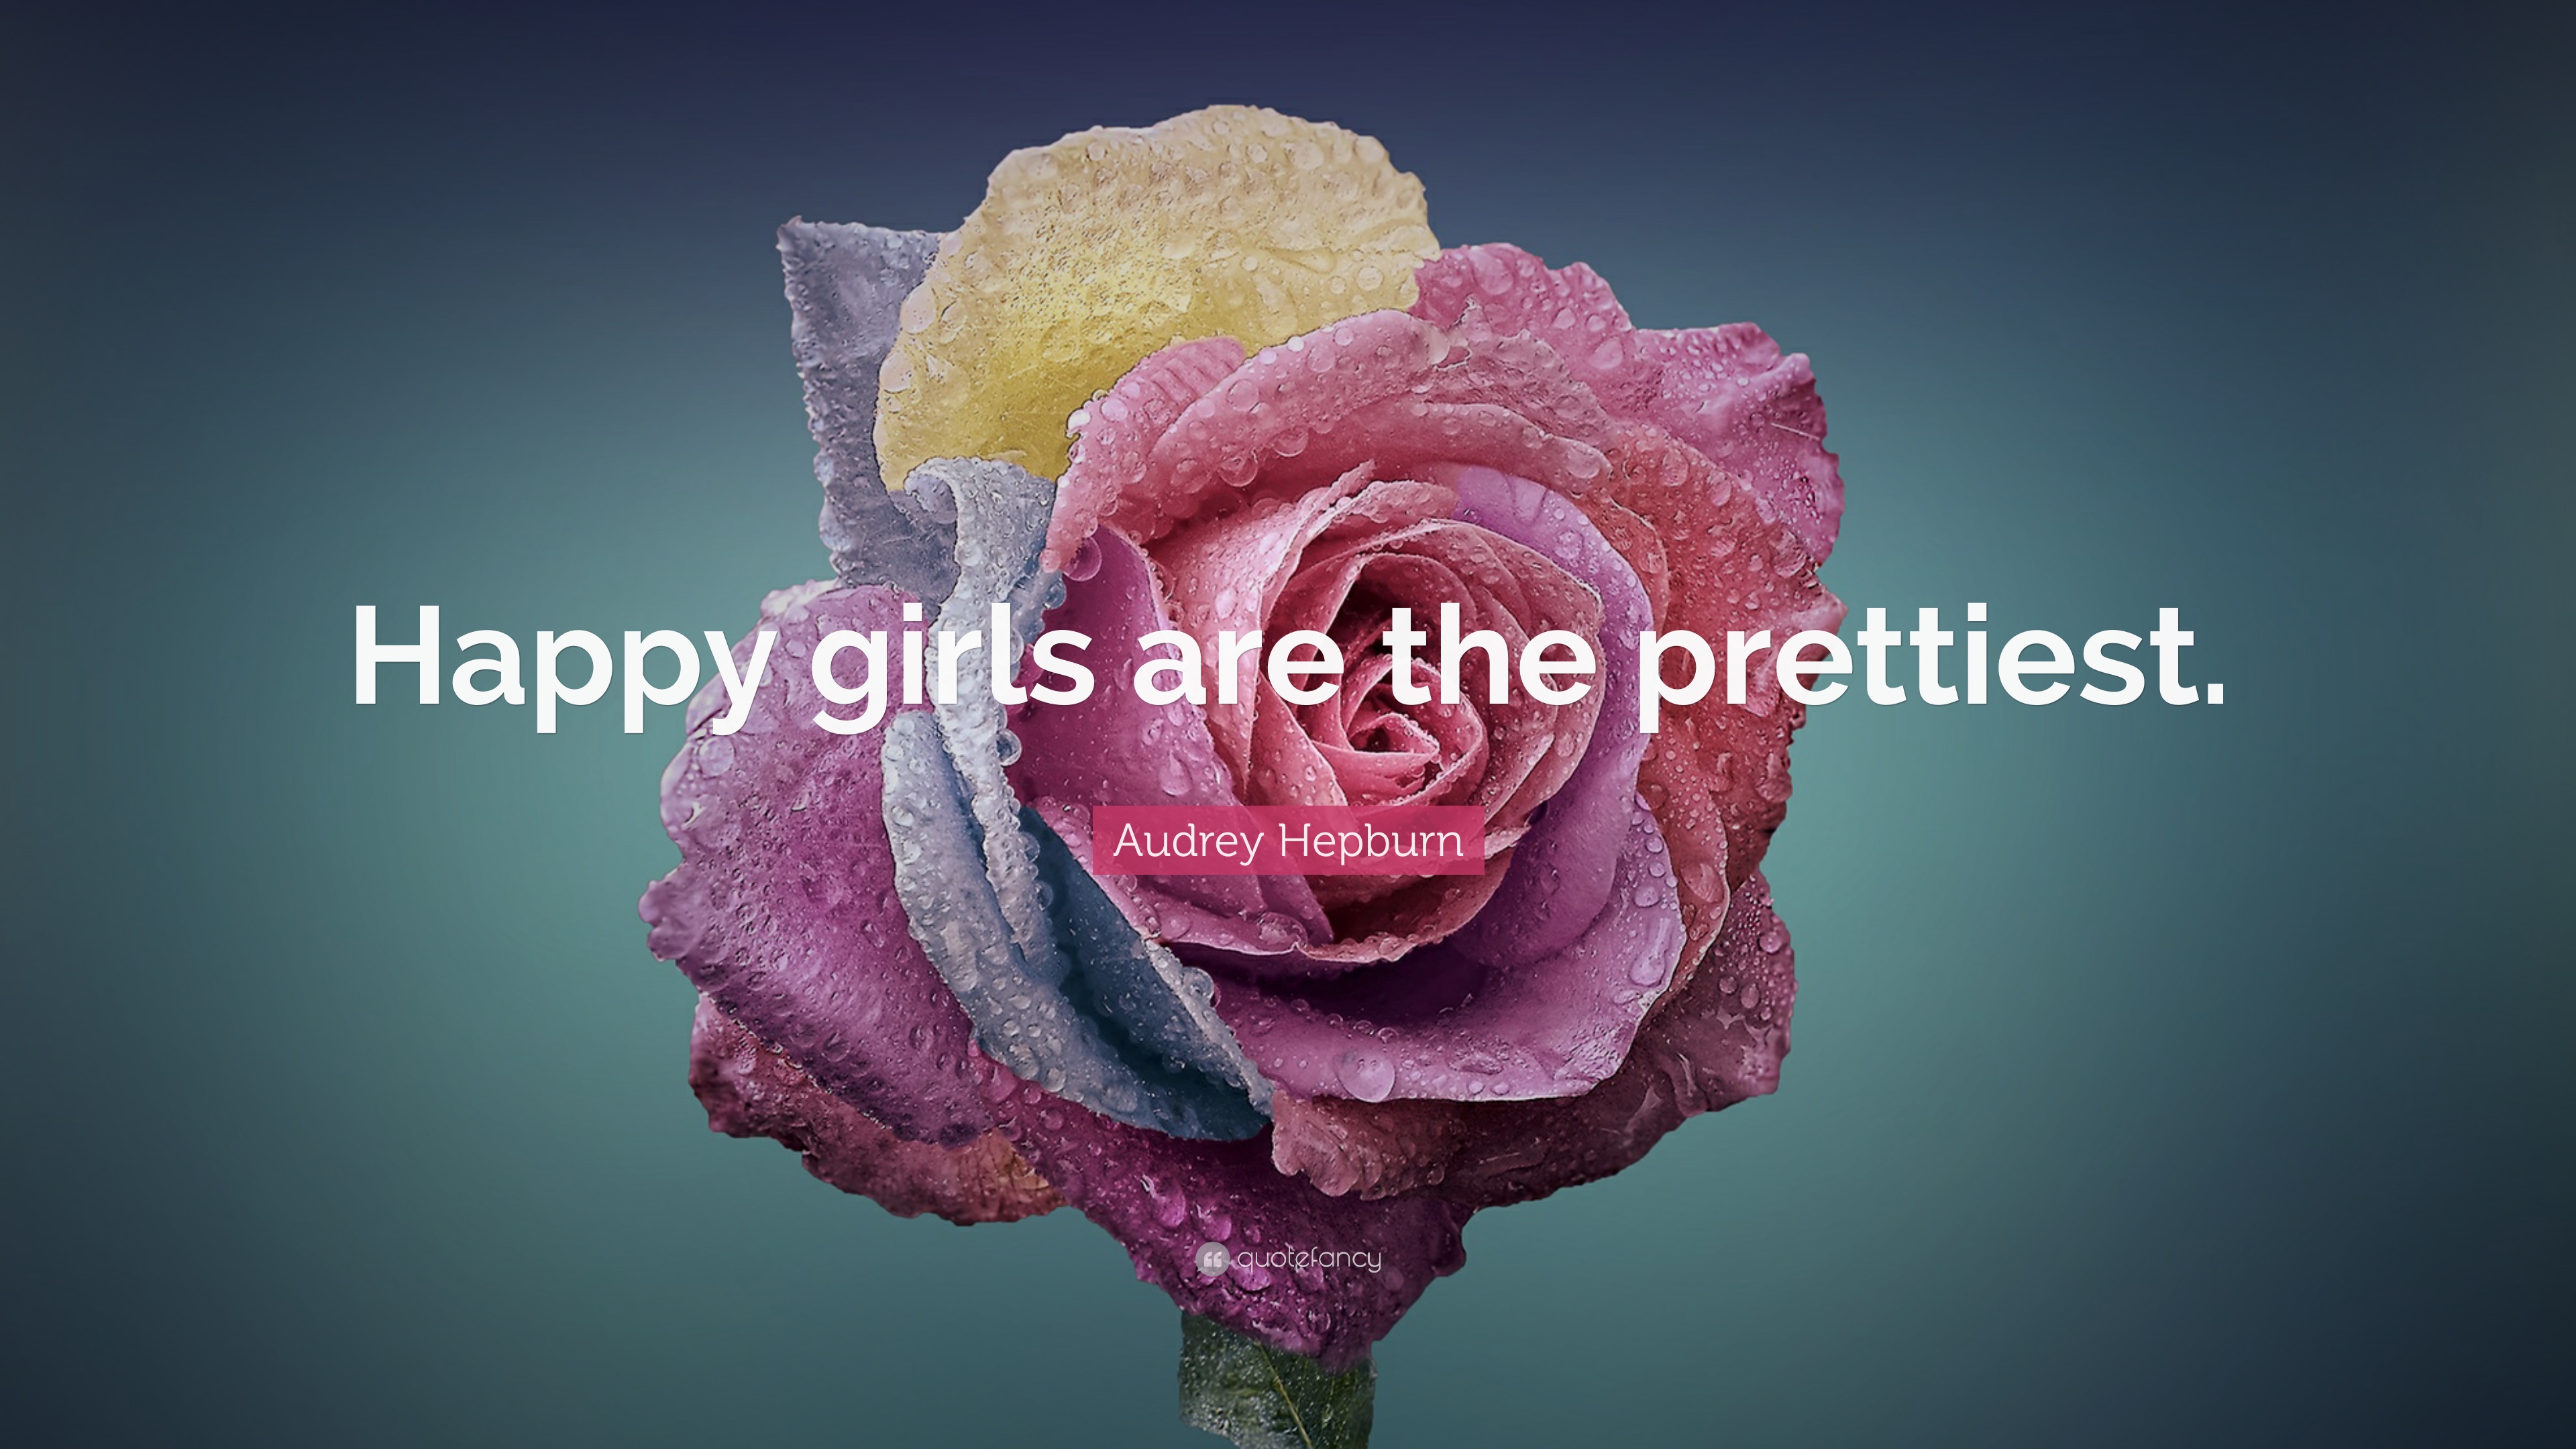 Audrey Hepburn Quote: “Happy girls are the prettiest.” 22